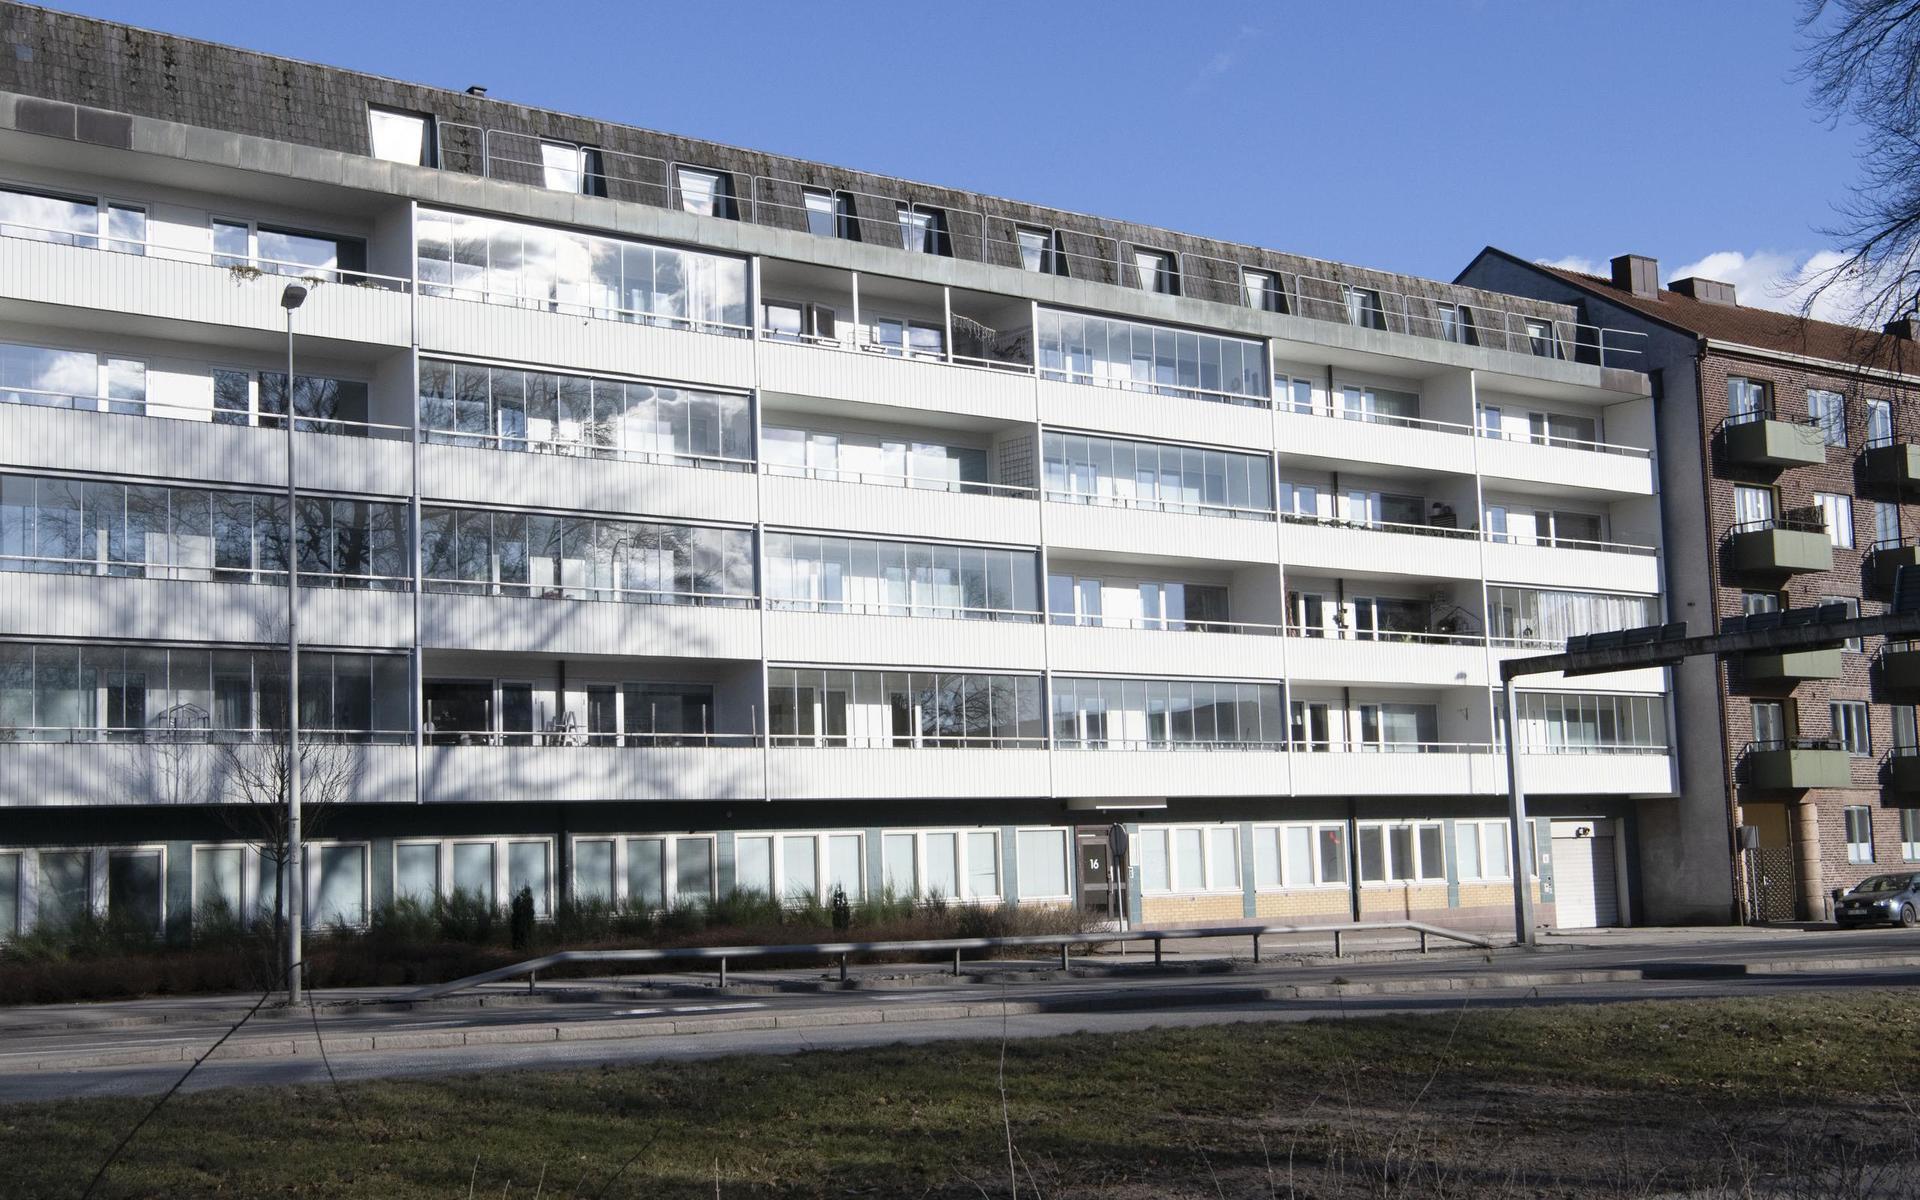 De 41 lägenheterna i det här huset på Badhusgatan ska HFAB nu sälja. Huset byggdes 1969 och ligger precis där Järnvägsleden övergår i Norra infartsleden